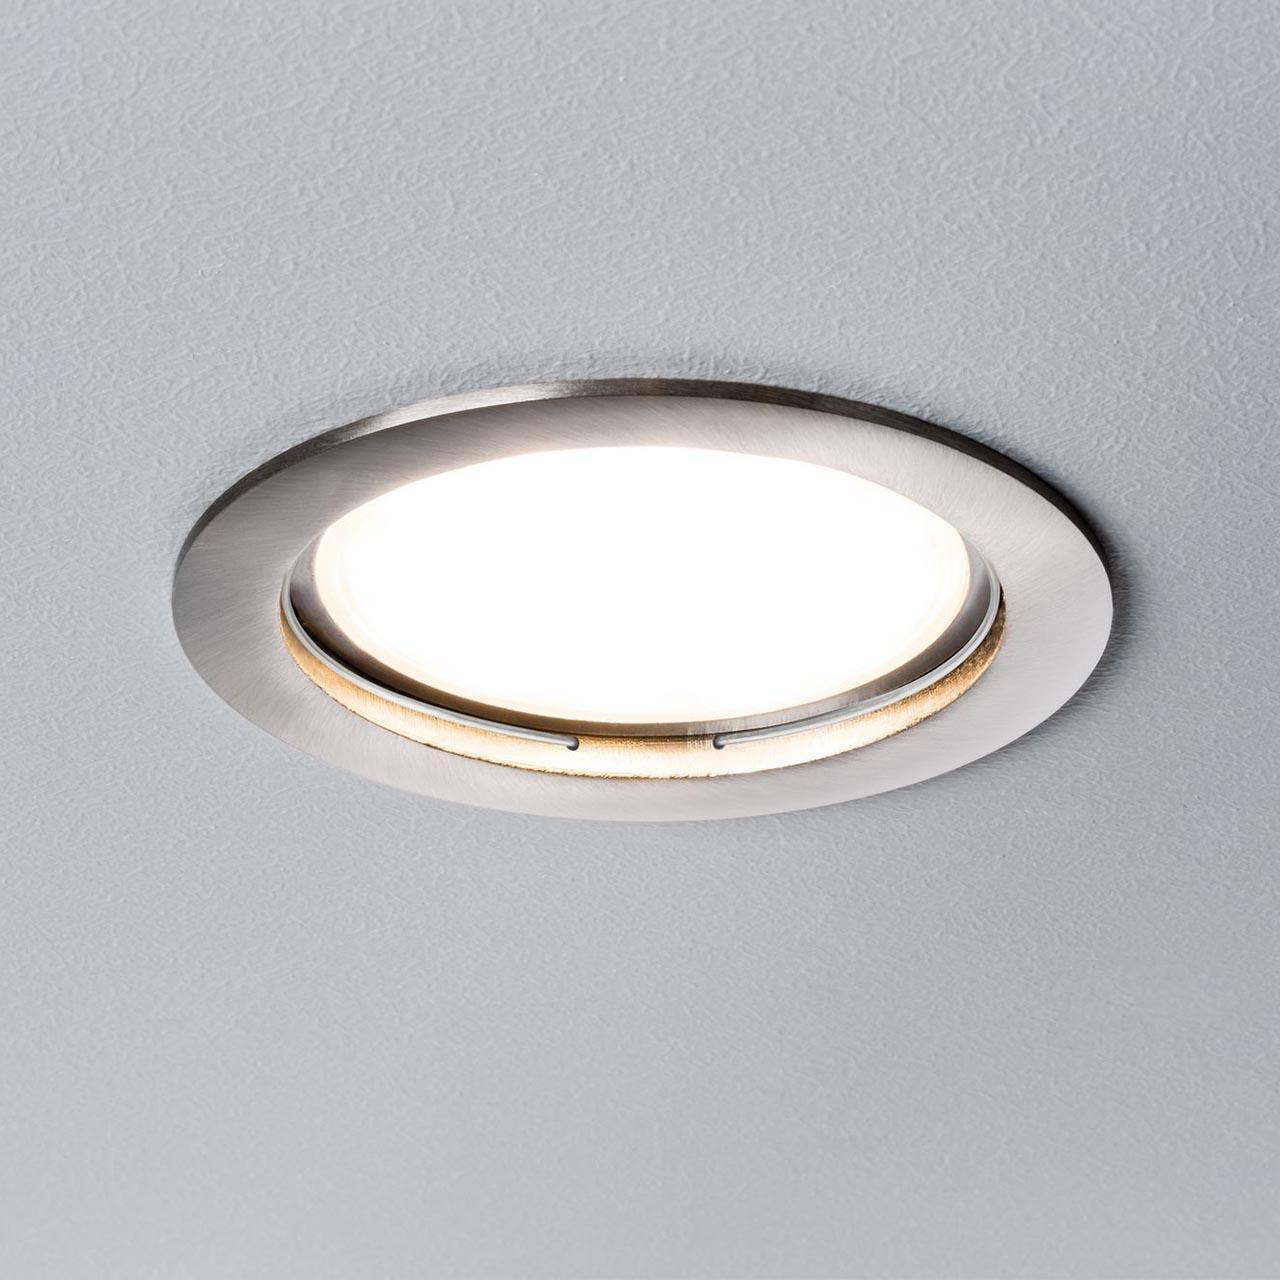 встраиваемые светодиодные светильники для ванной комнаты влагозащищенные потолочные